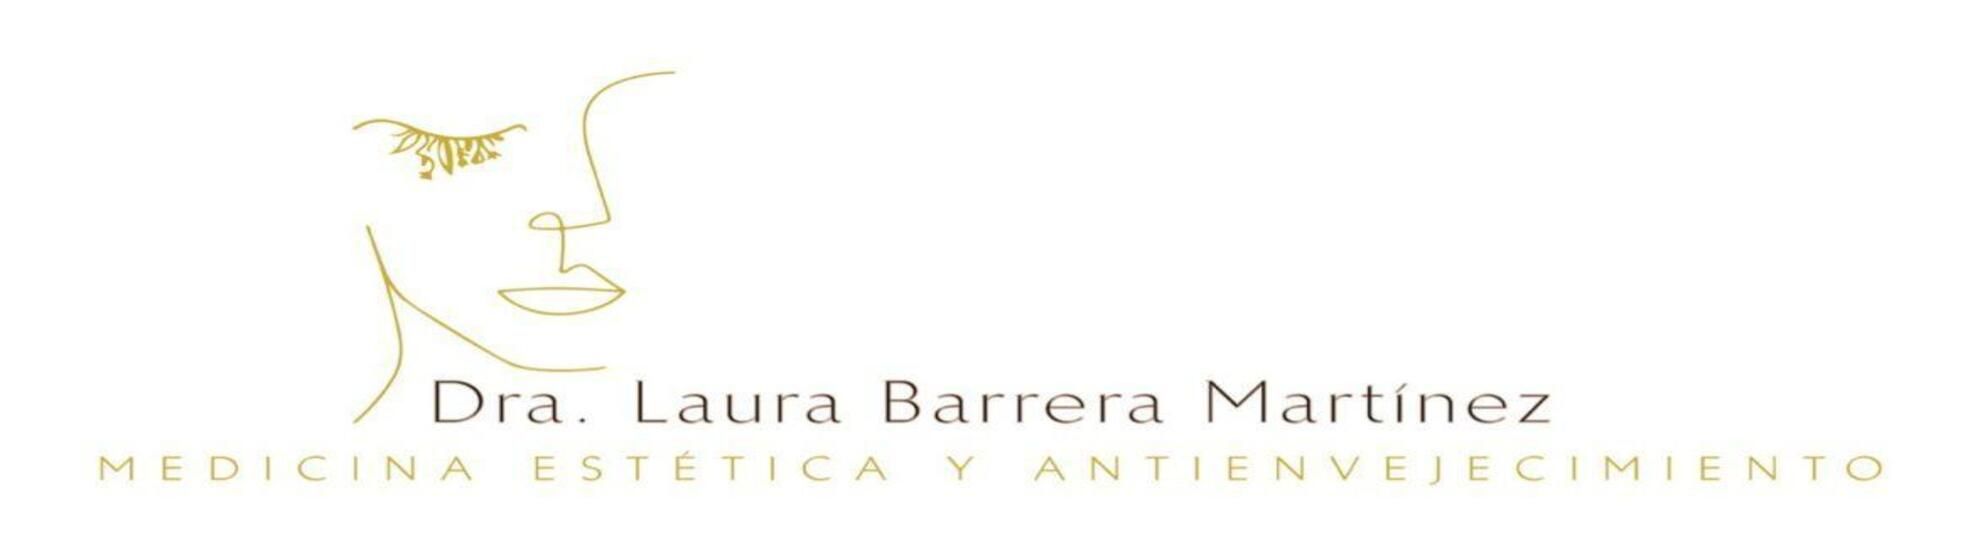 Dra. Laura Barrera Martínez